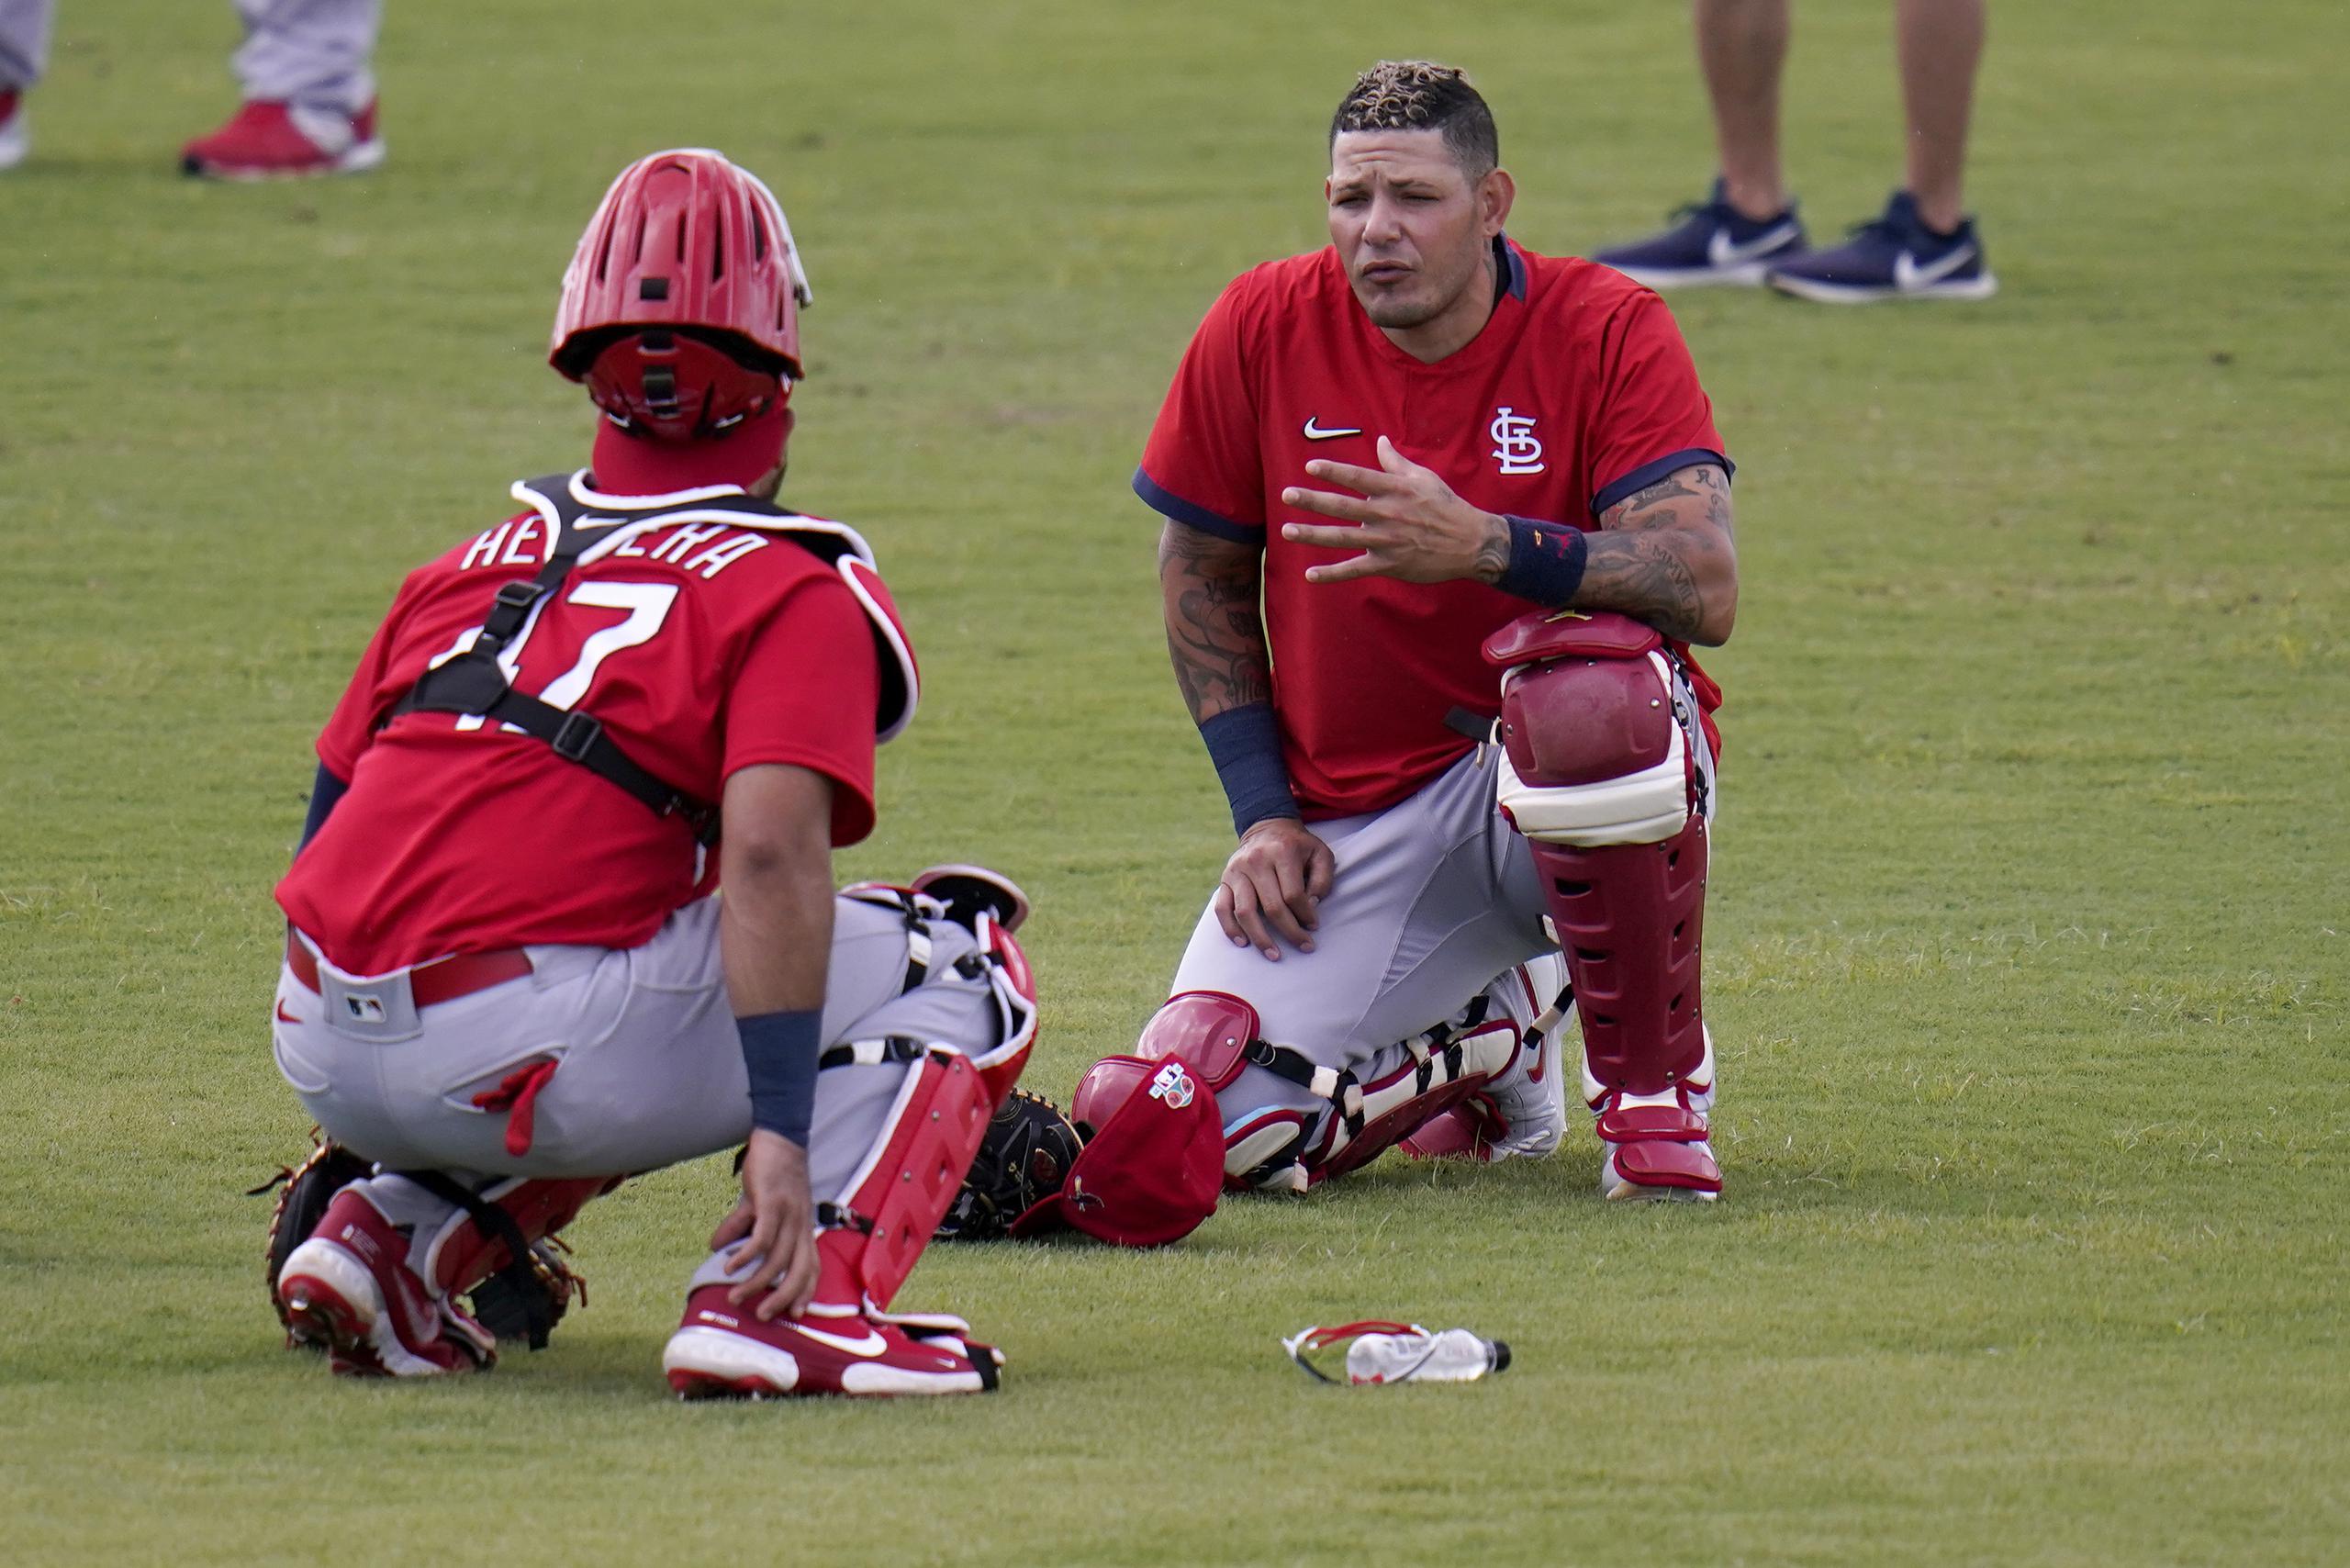 El receptor de San Luis, Yadier Molina (derecha), charla con el también receptor Iván Herrera durante un entrenamiento en Jupiter, Florida. Molina regresa con los Cardinals para una 18va temporada.